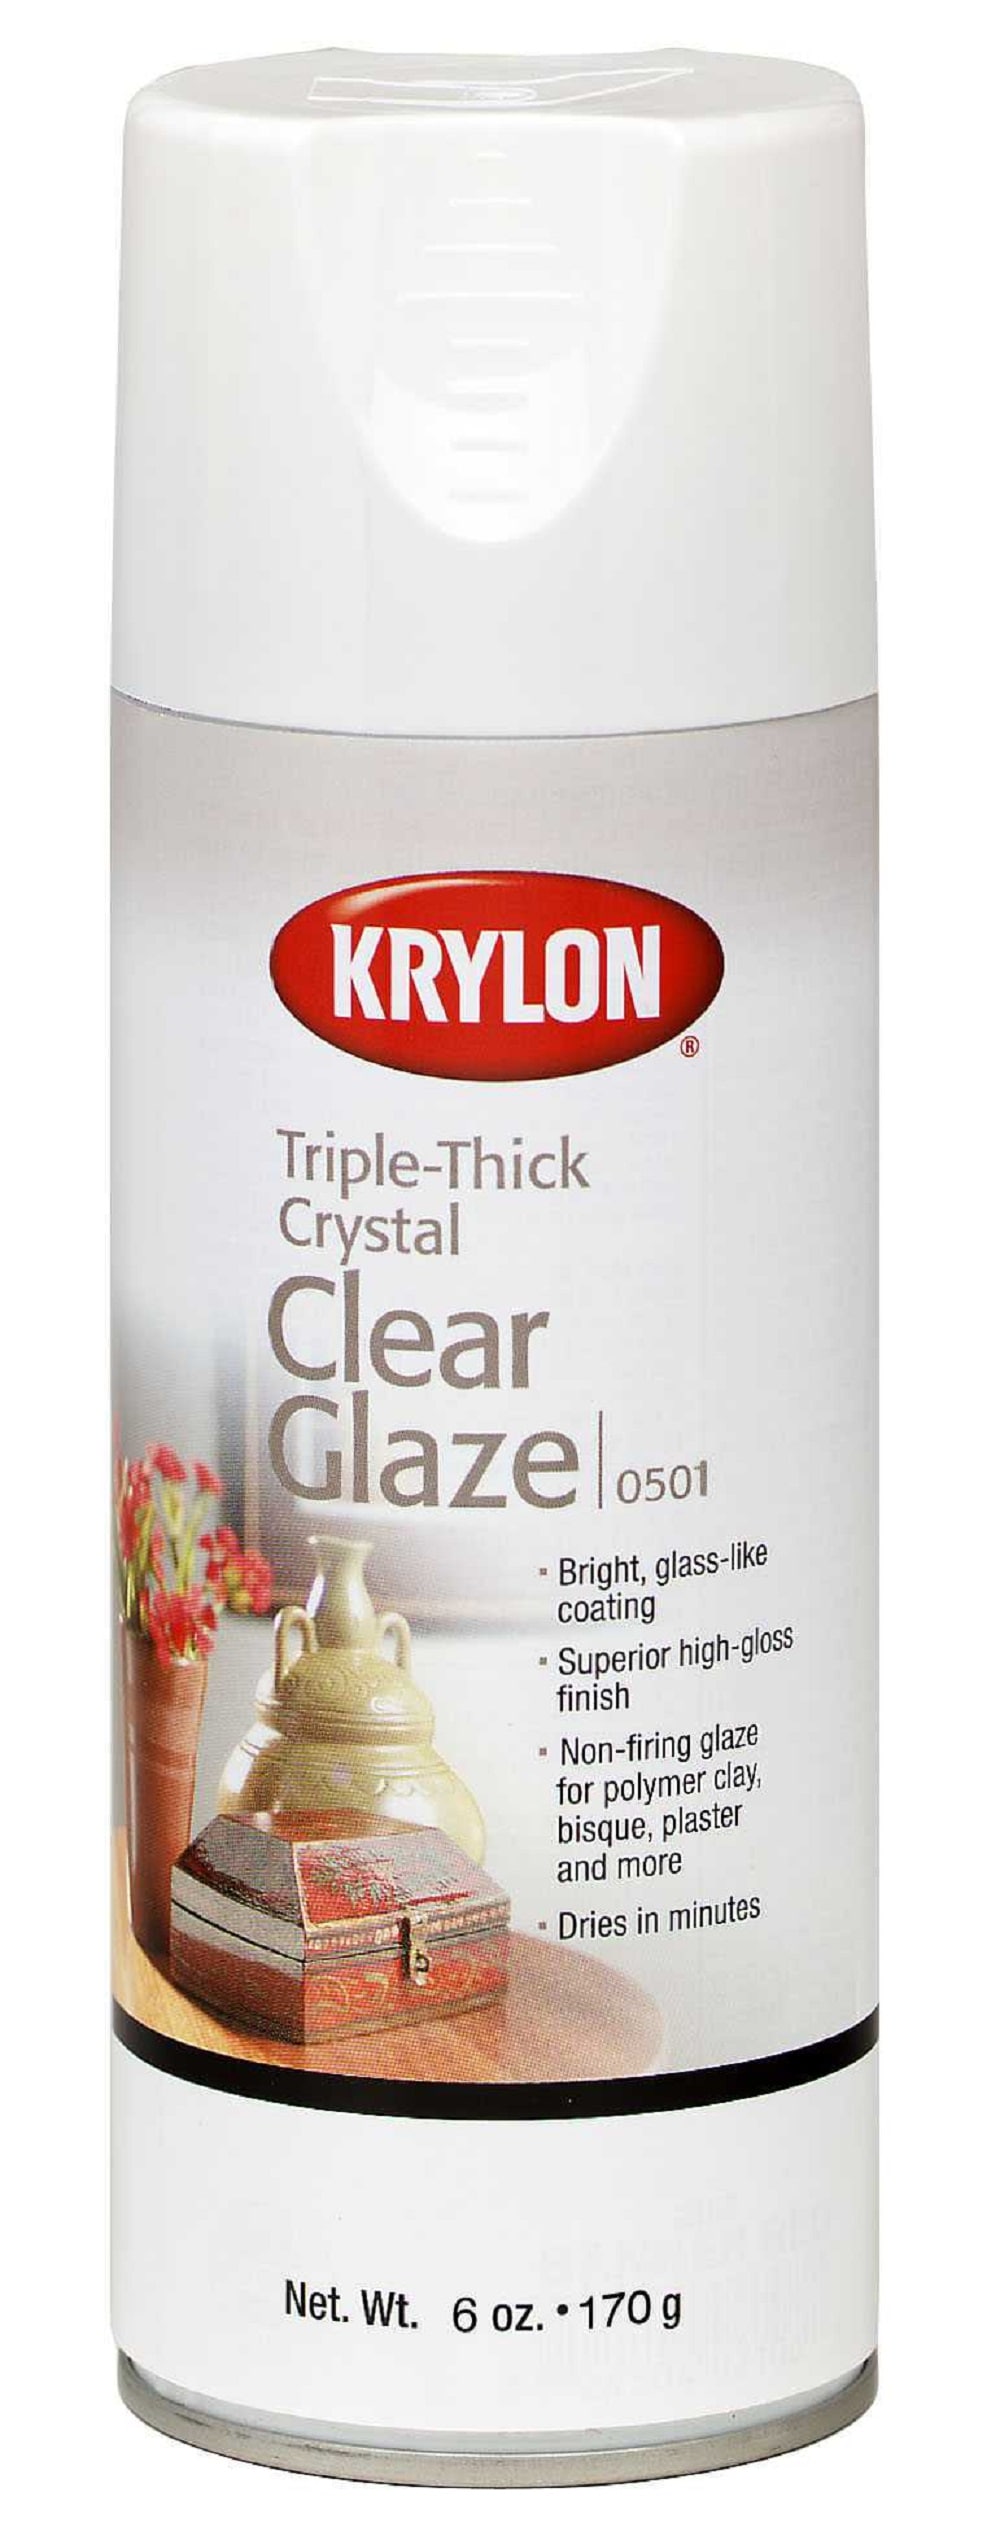 Krylon High-Gloss Crystal Clear Spray Paint (NET WT. 11-oz) in the